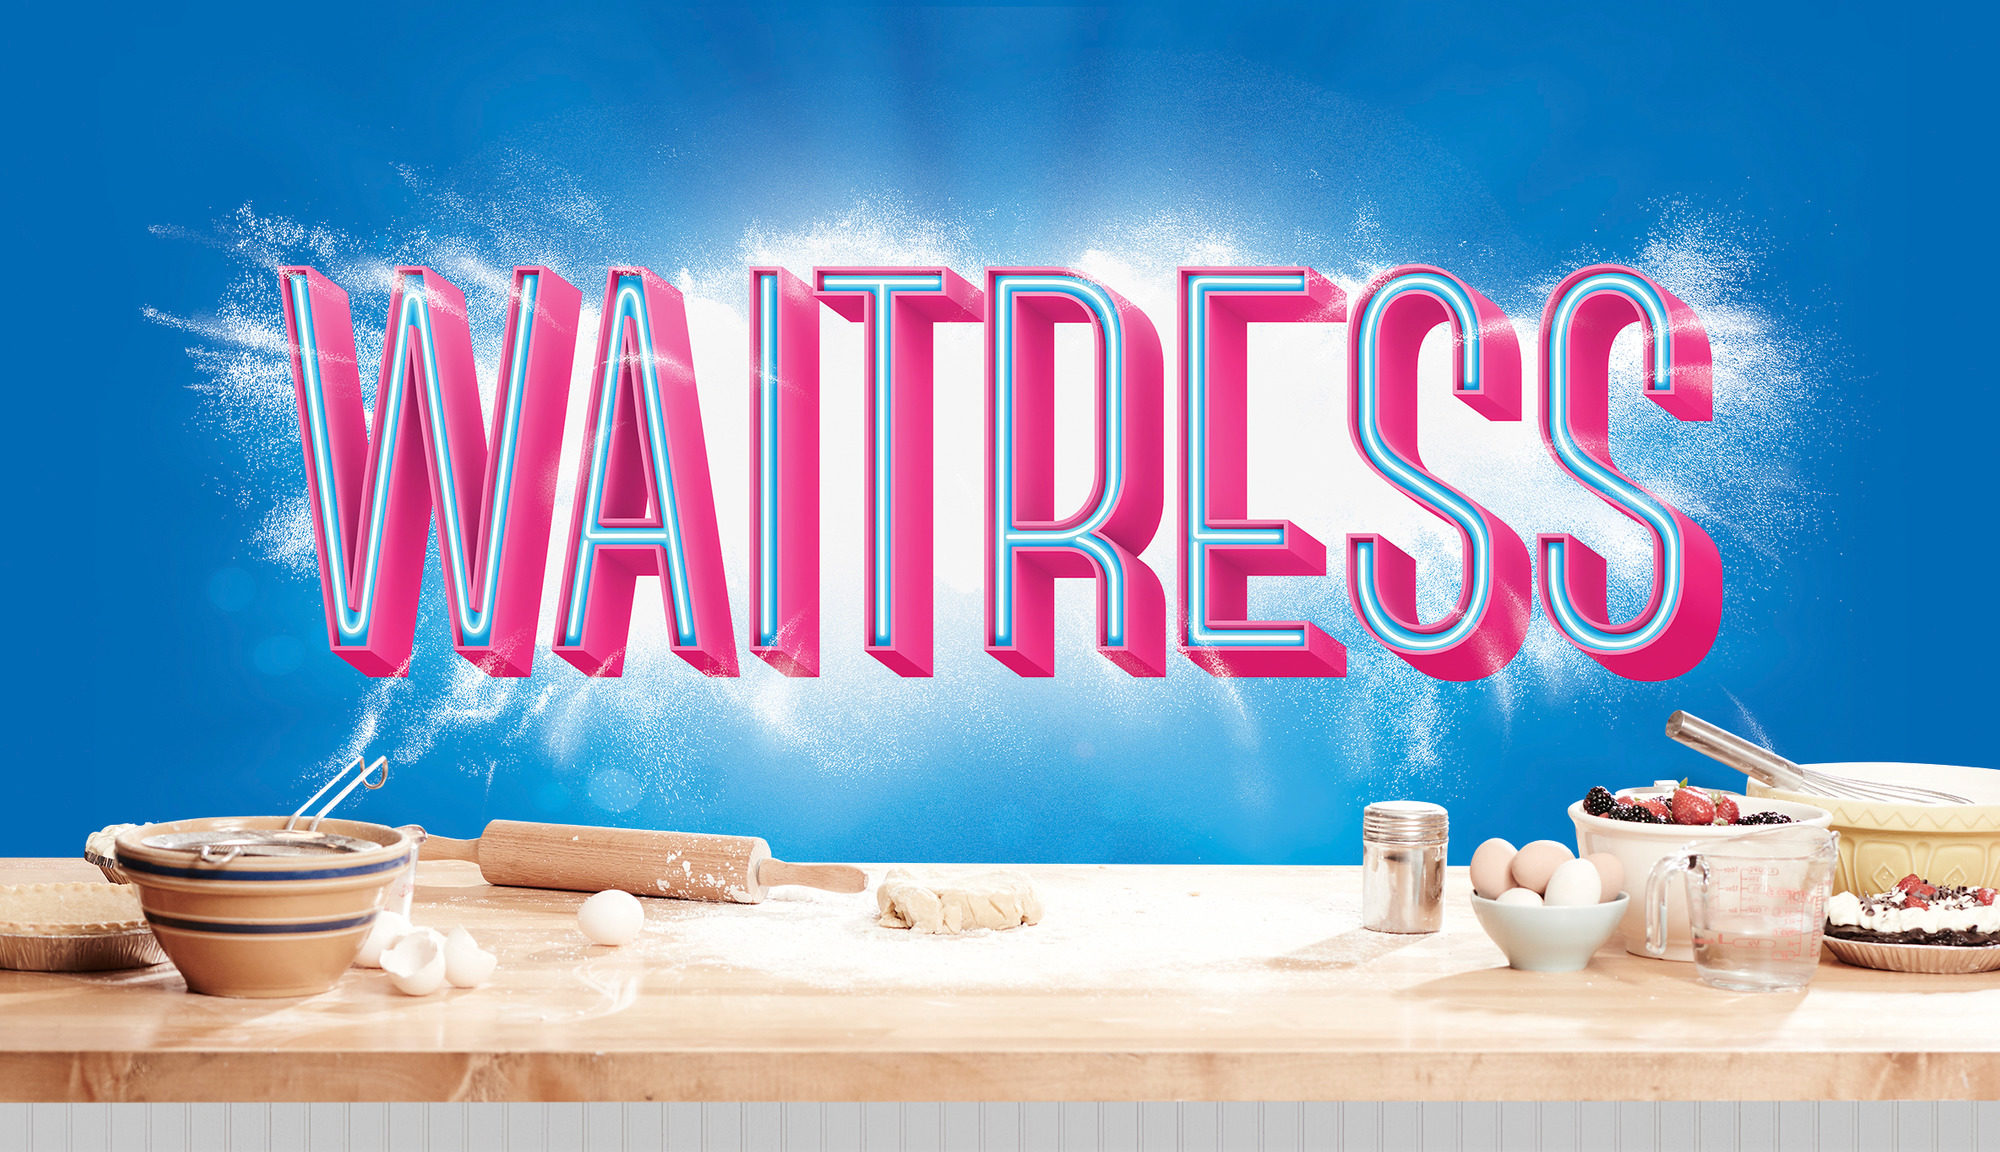 Waitress (NY)